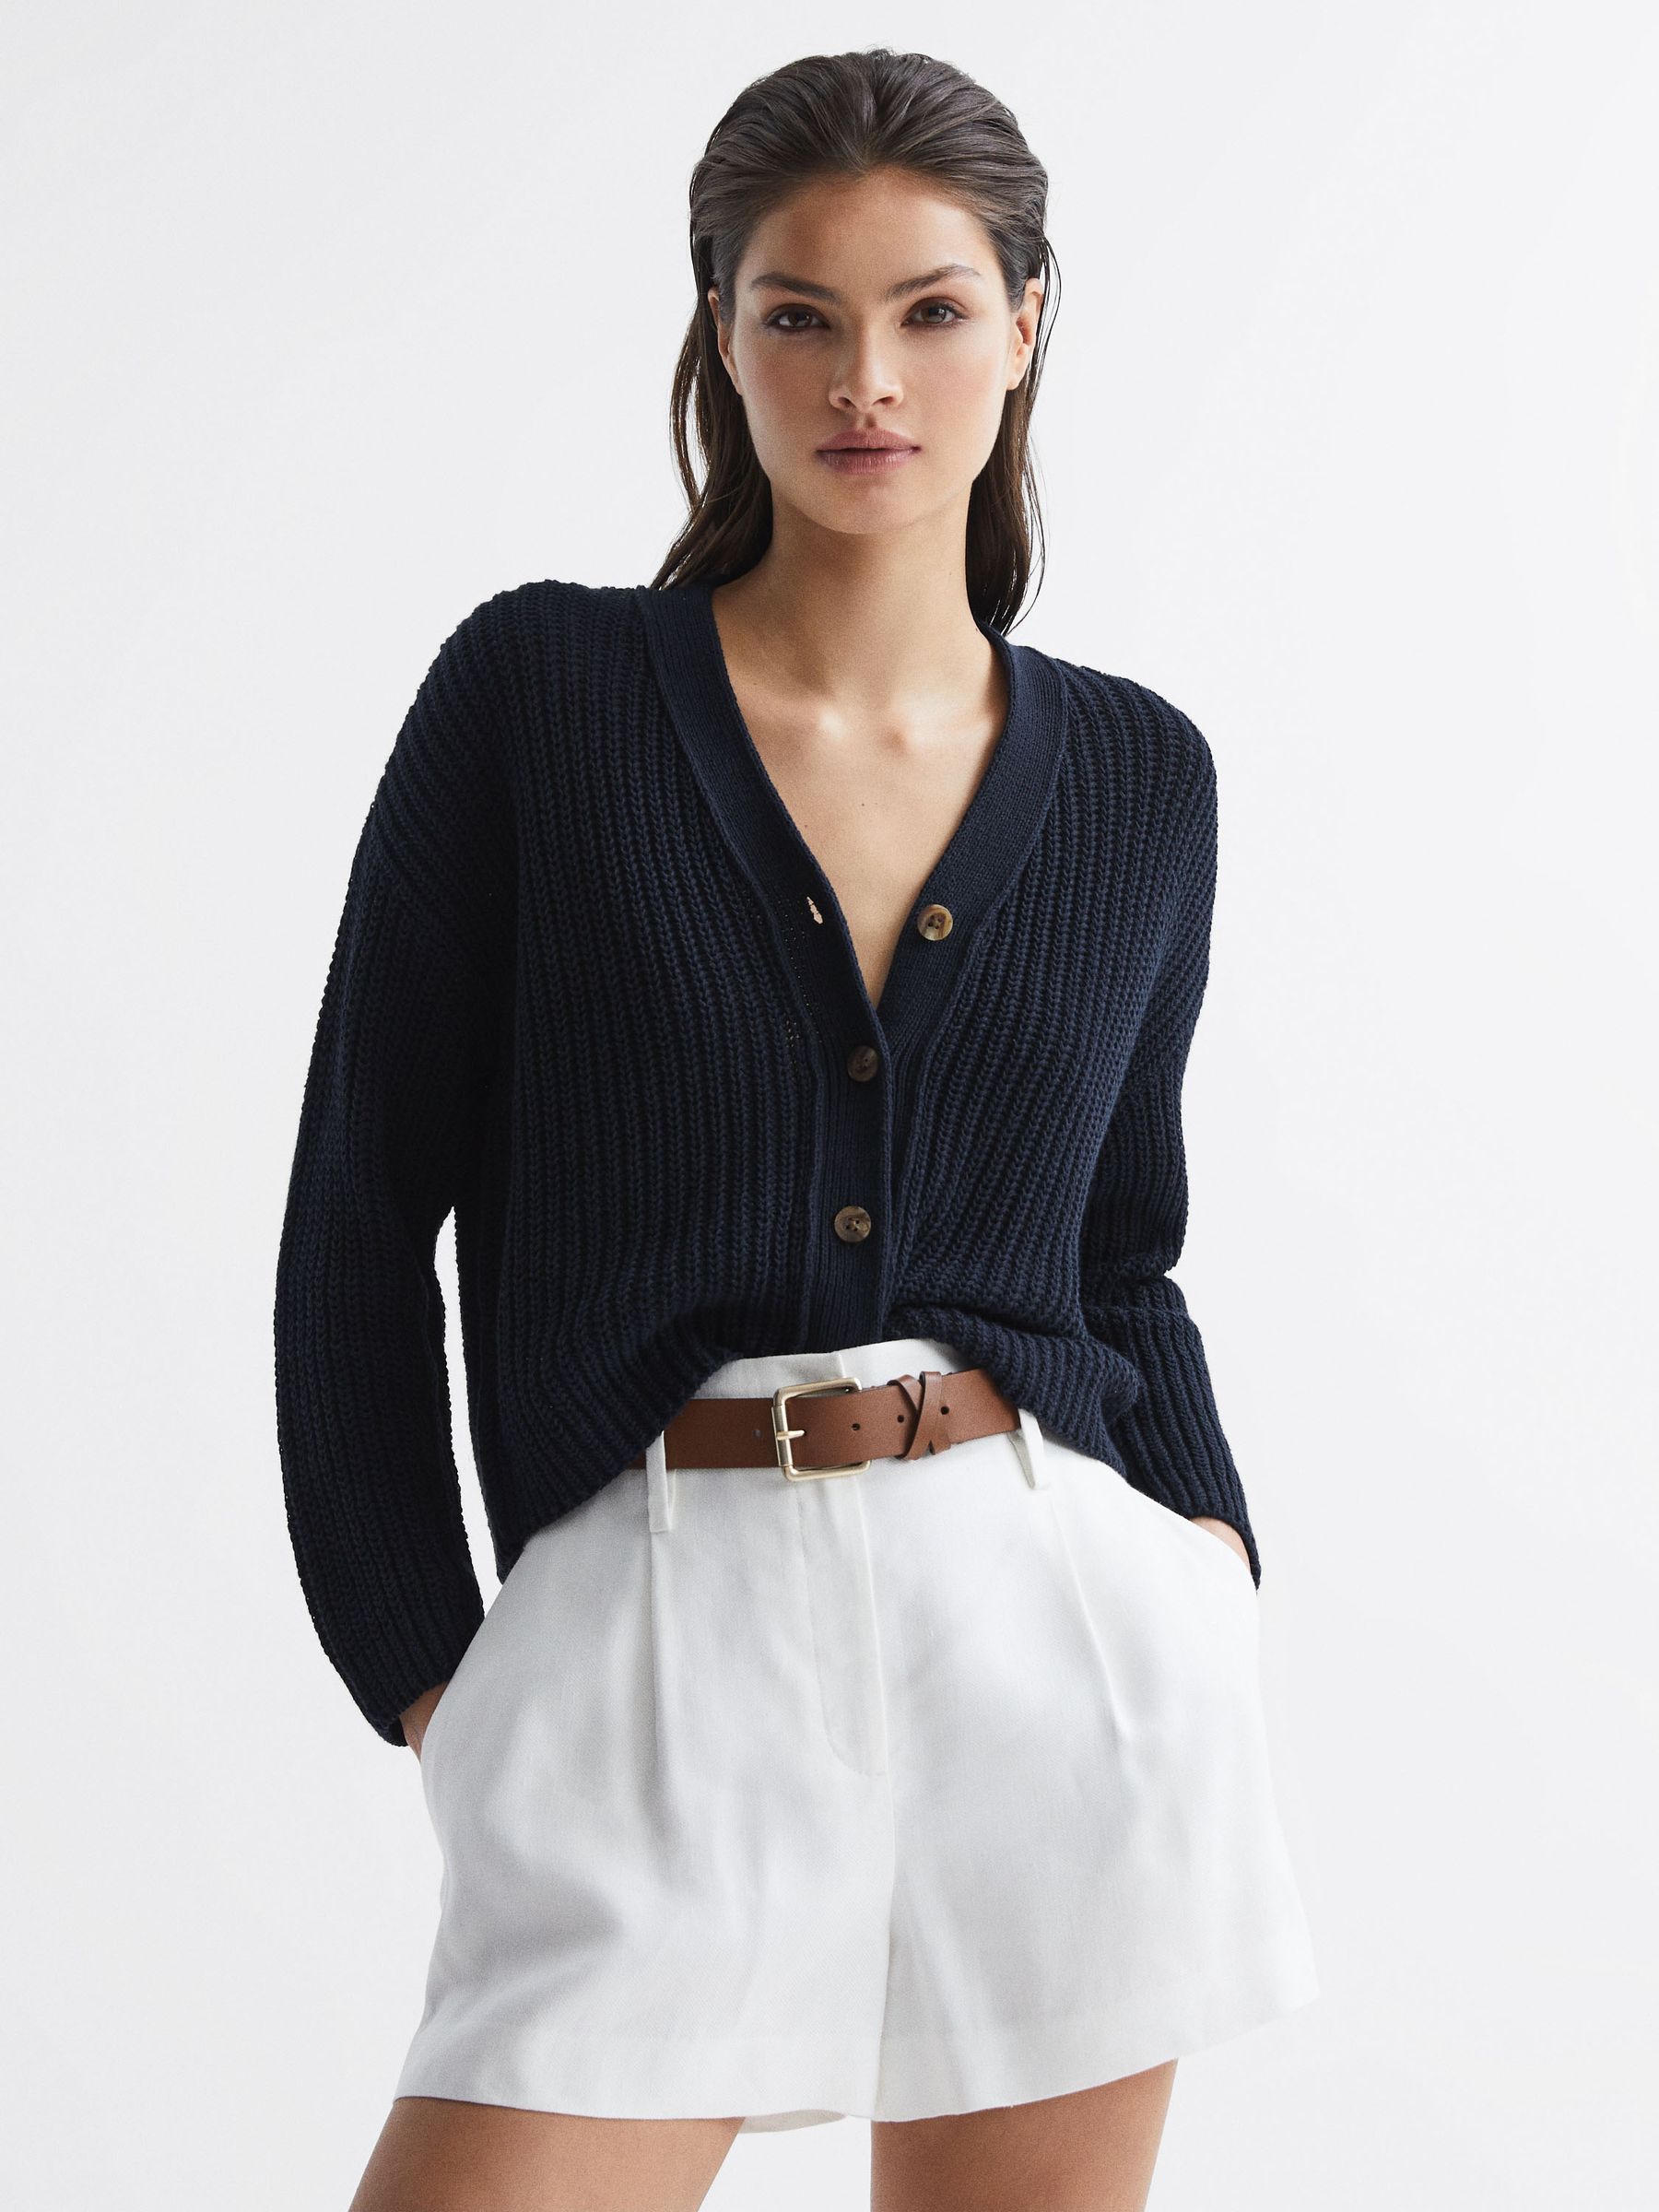 Reiss Adeena Cotton-Linen Blend Knit Cardigan | REISS Ireland